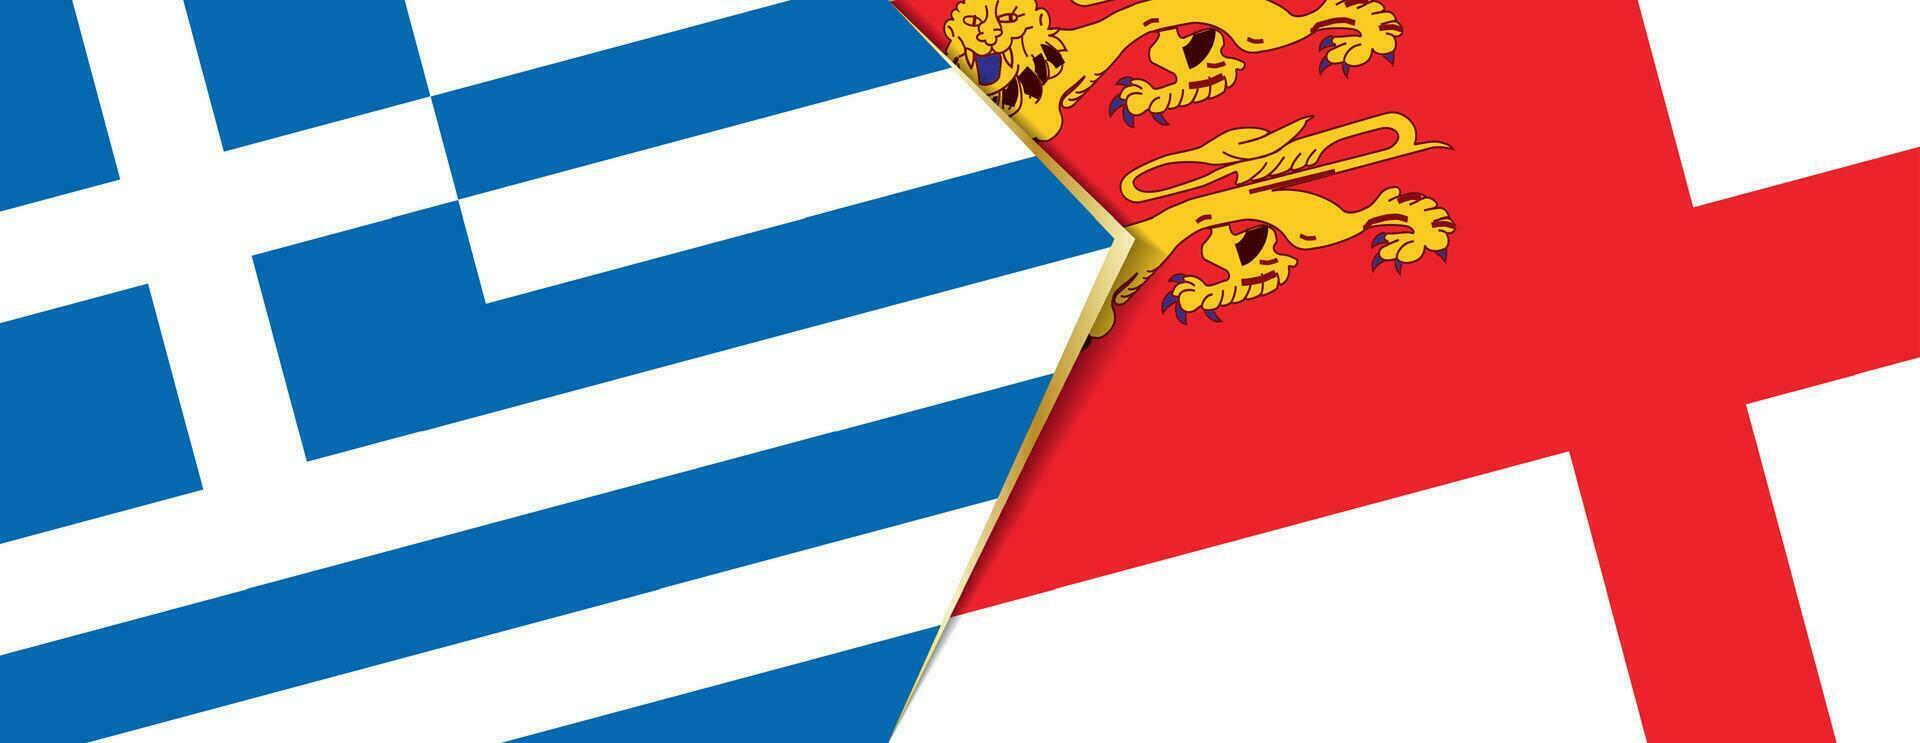 grekland och sark flaggor, två vektor flaggor.